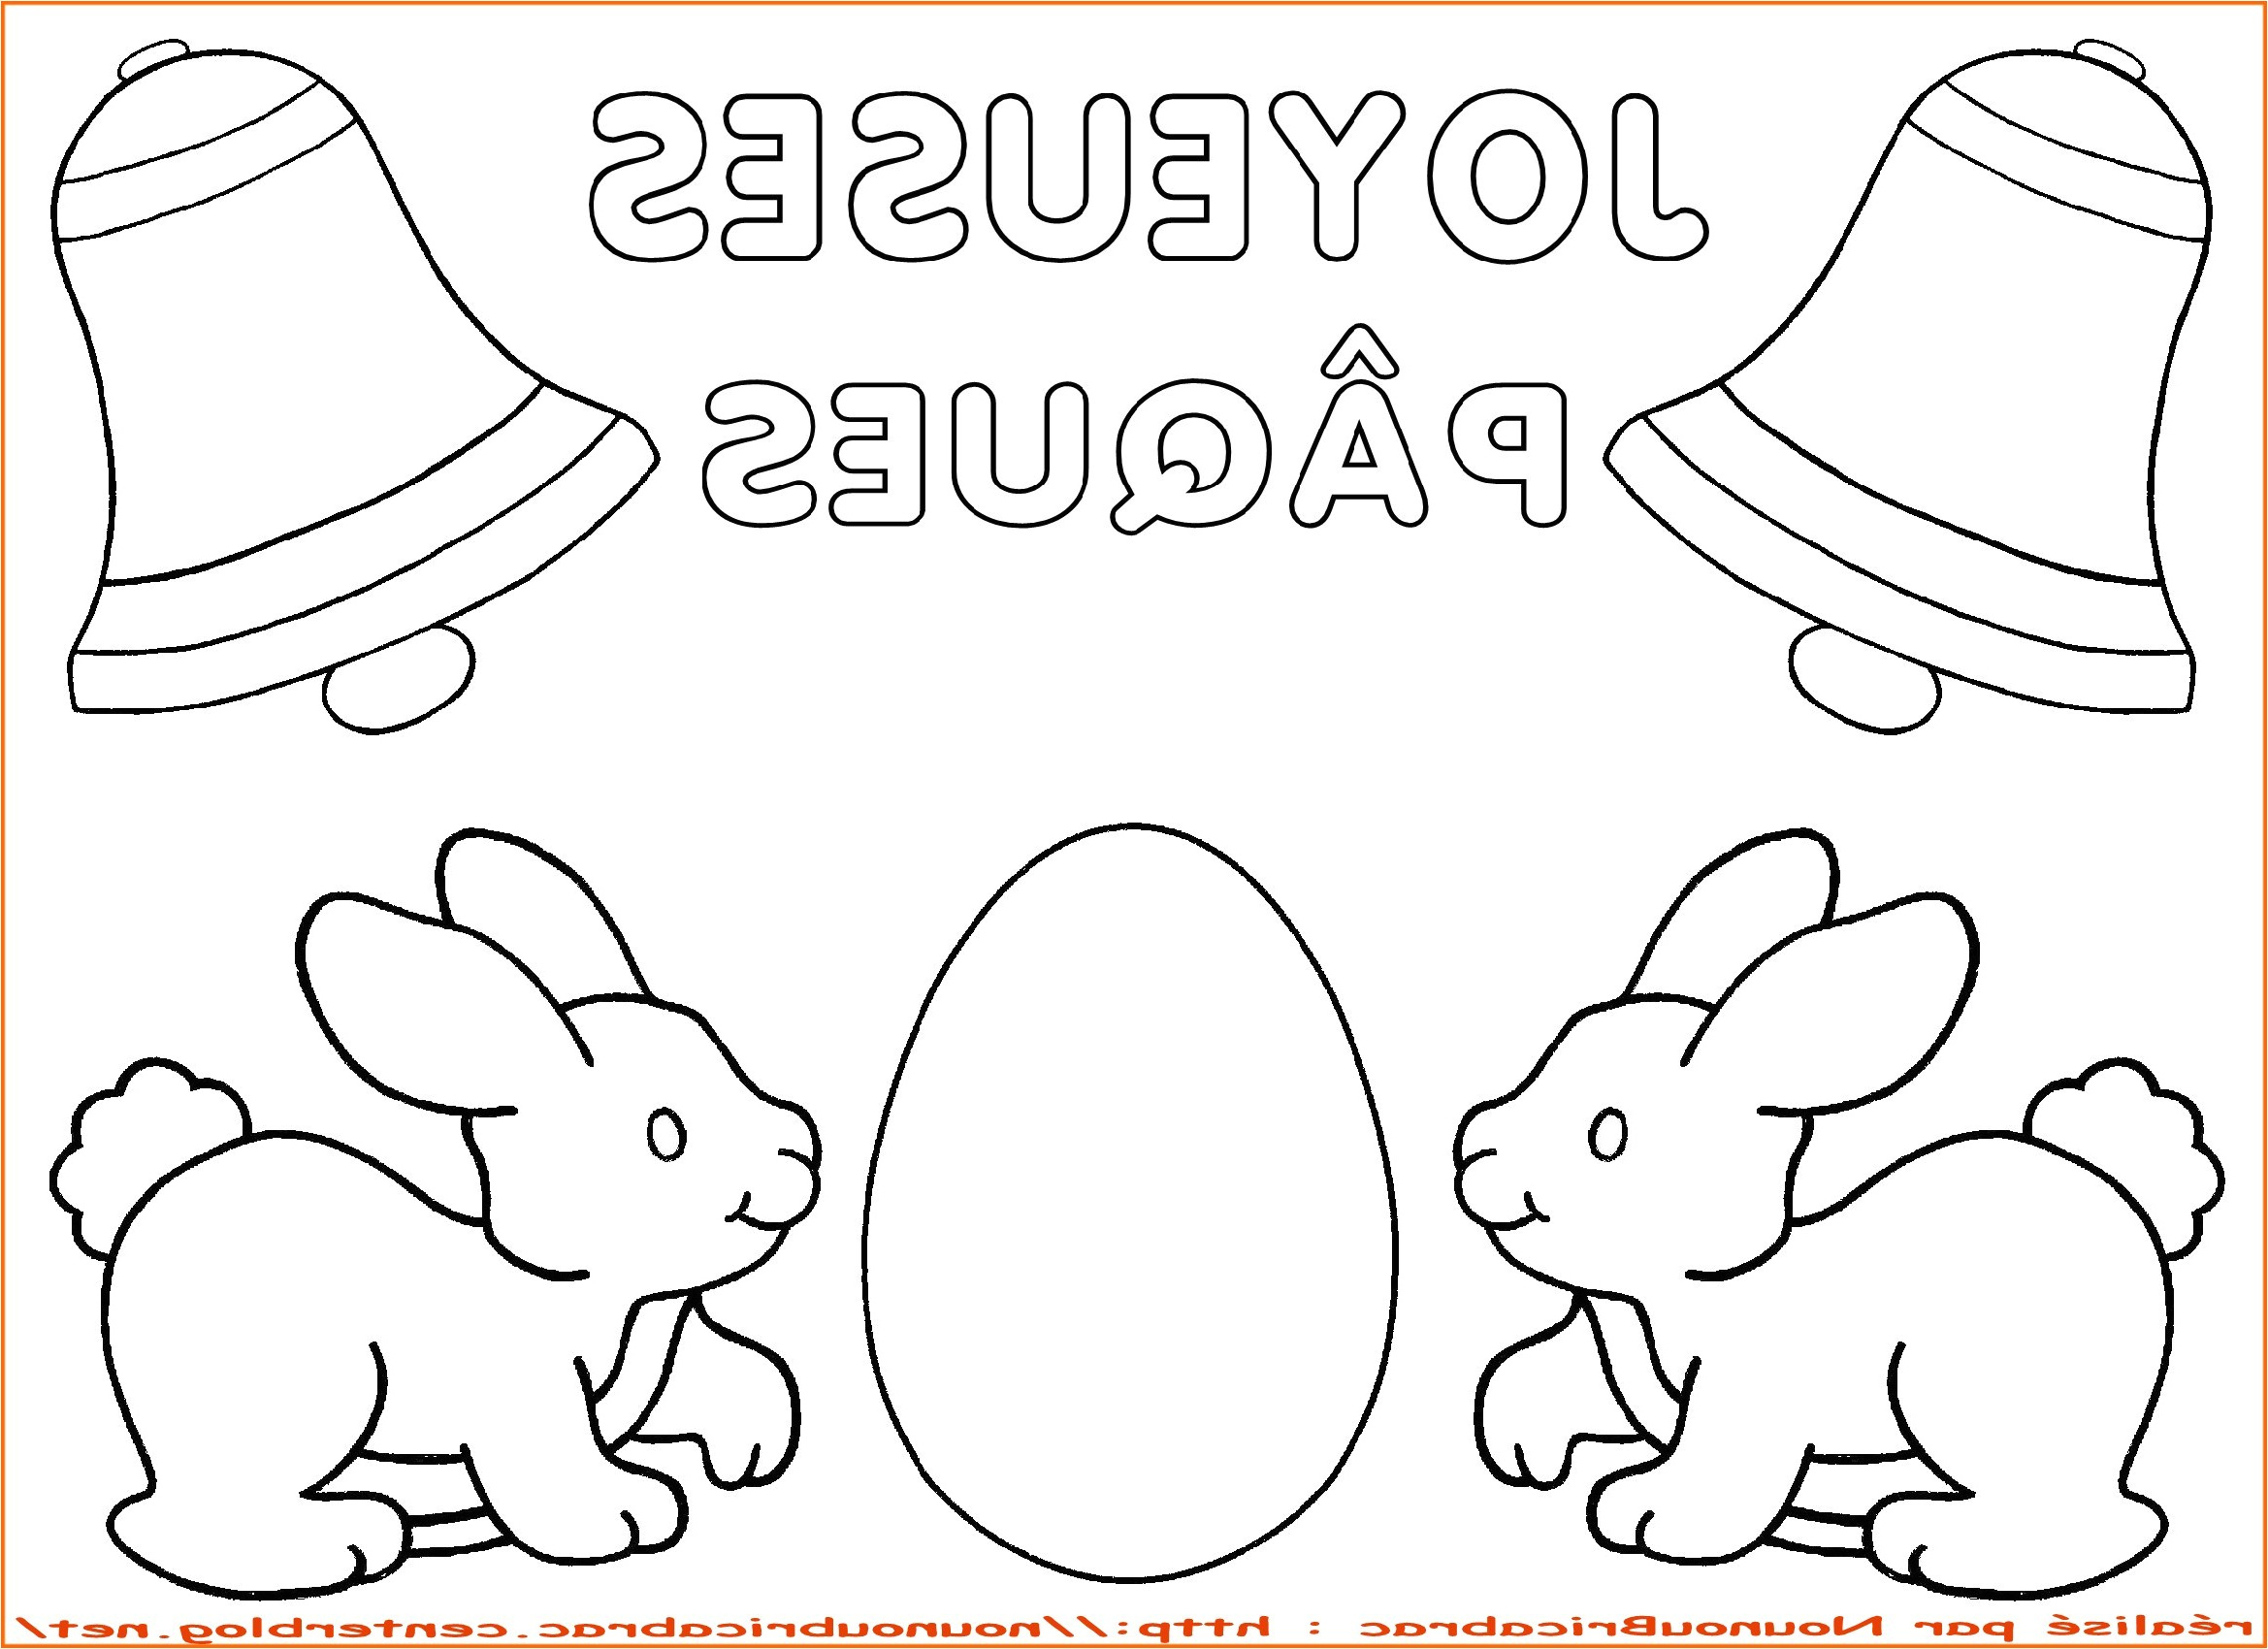 coloriage gratuit a imprimer lapin de paques elegant dessin colorier pour paques mademoiselleosaki